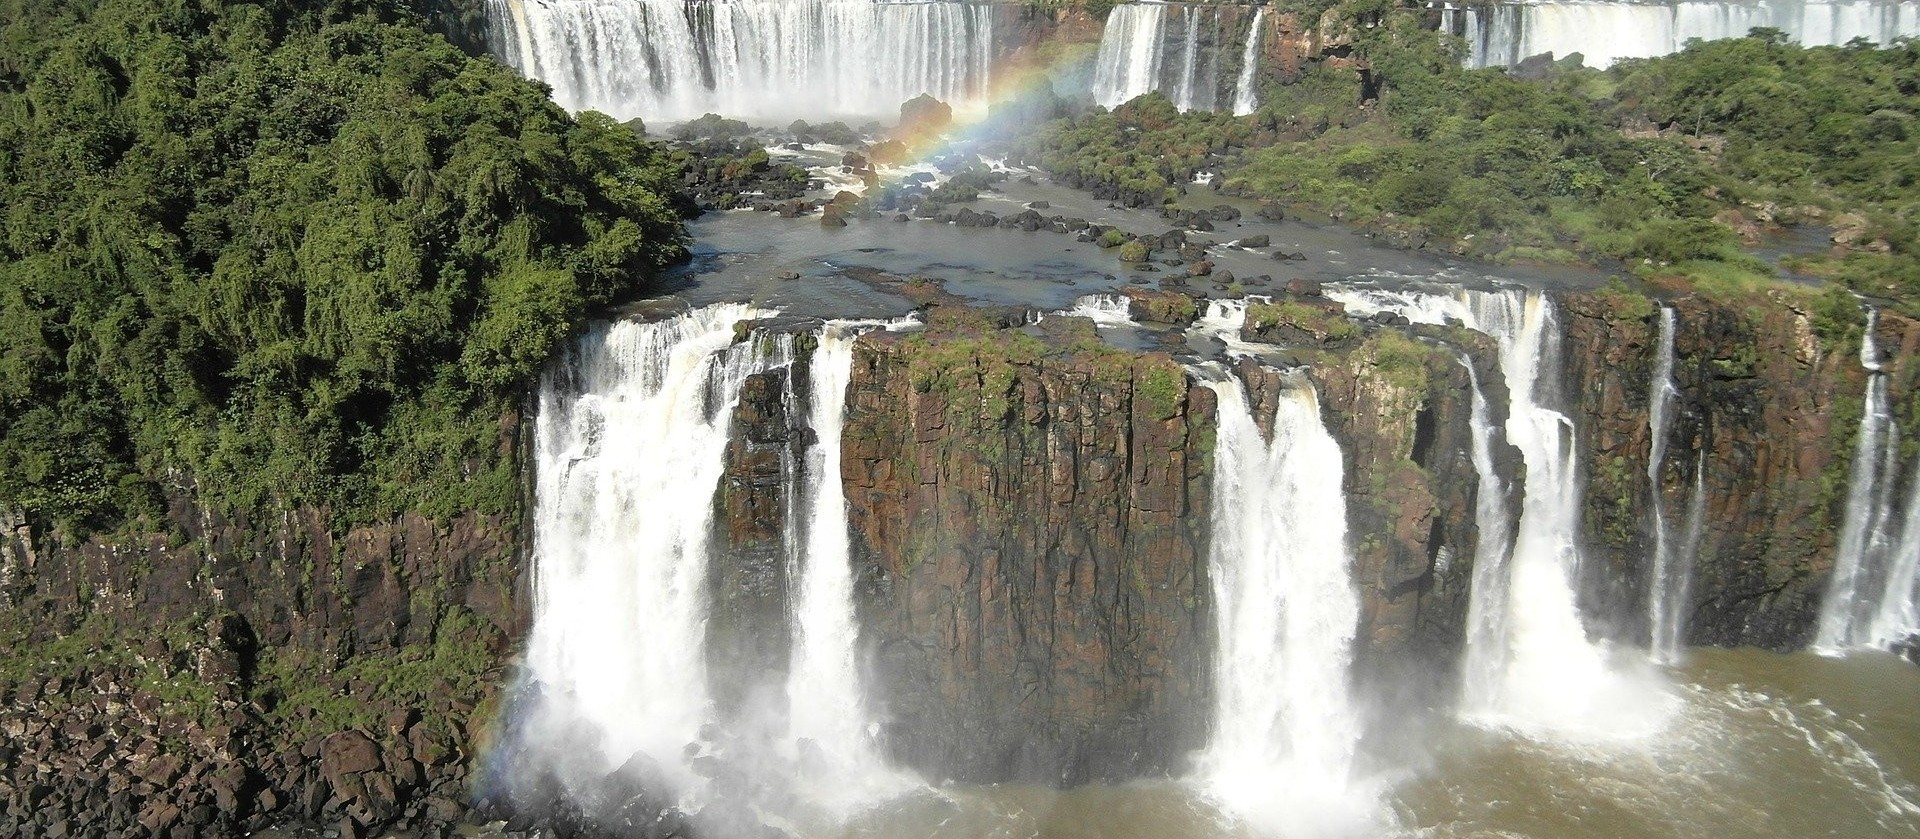 Feriado prolongado  amplia visitação aos atrativos de Foz do Iguaçu 